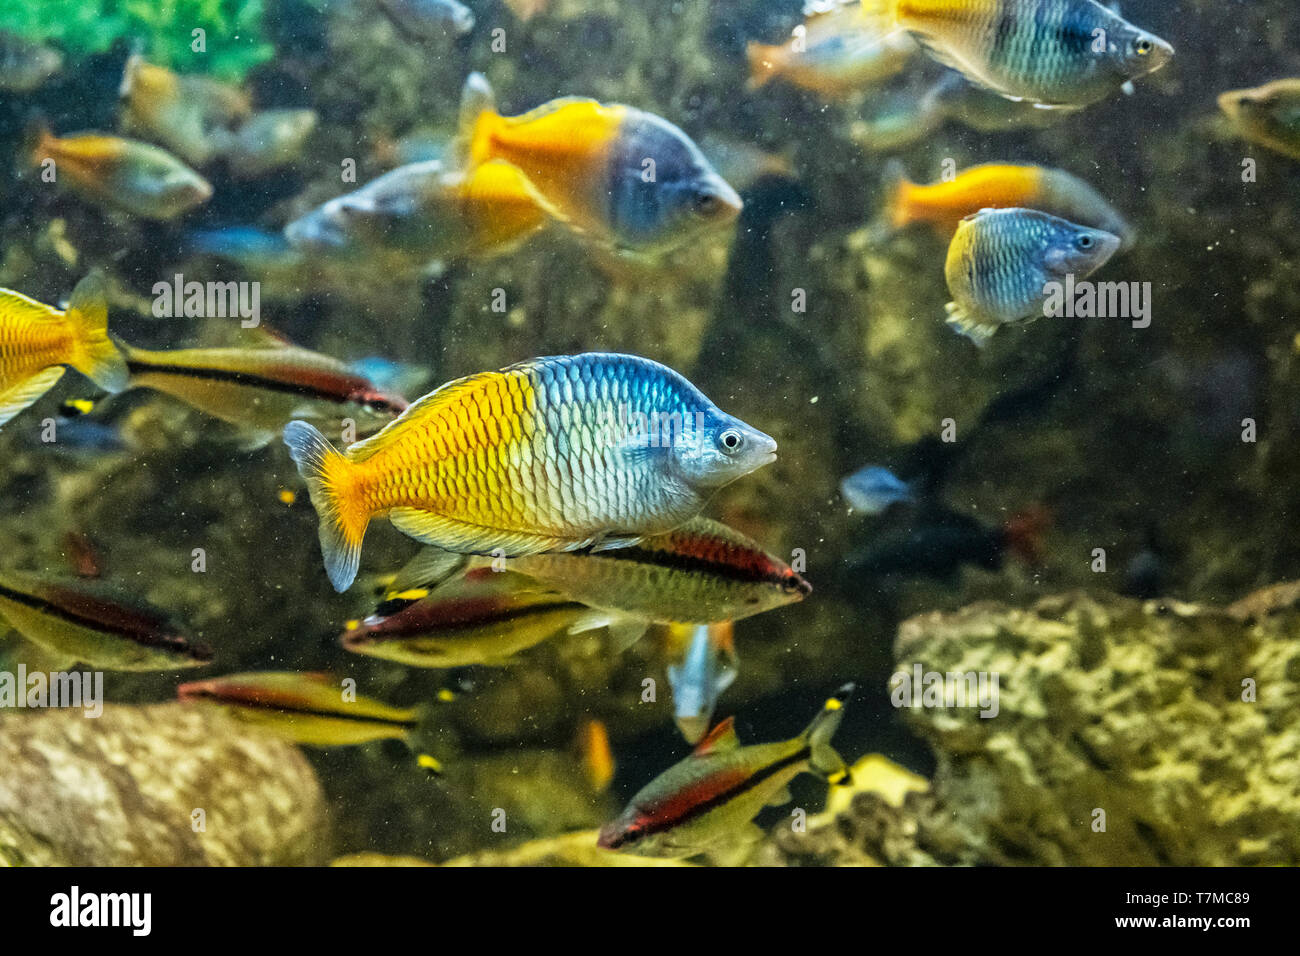 Boeseman's rainbowfish - Melanotaenia boesemani. Freshwater natural scene. Beauty in nature. Stock Photo